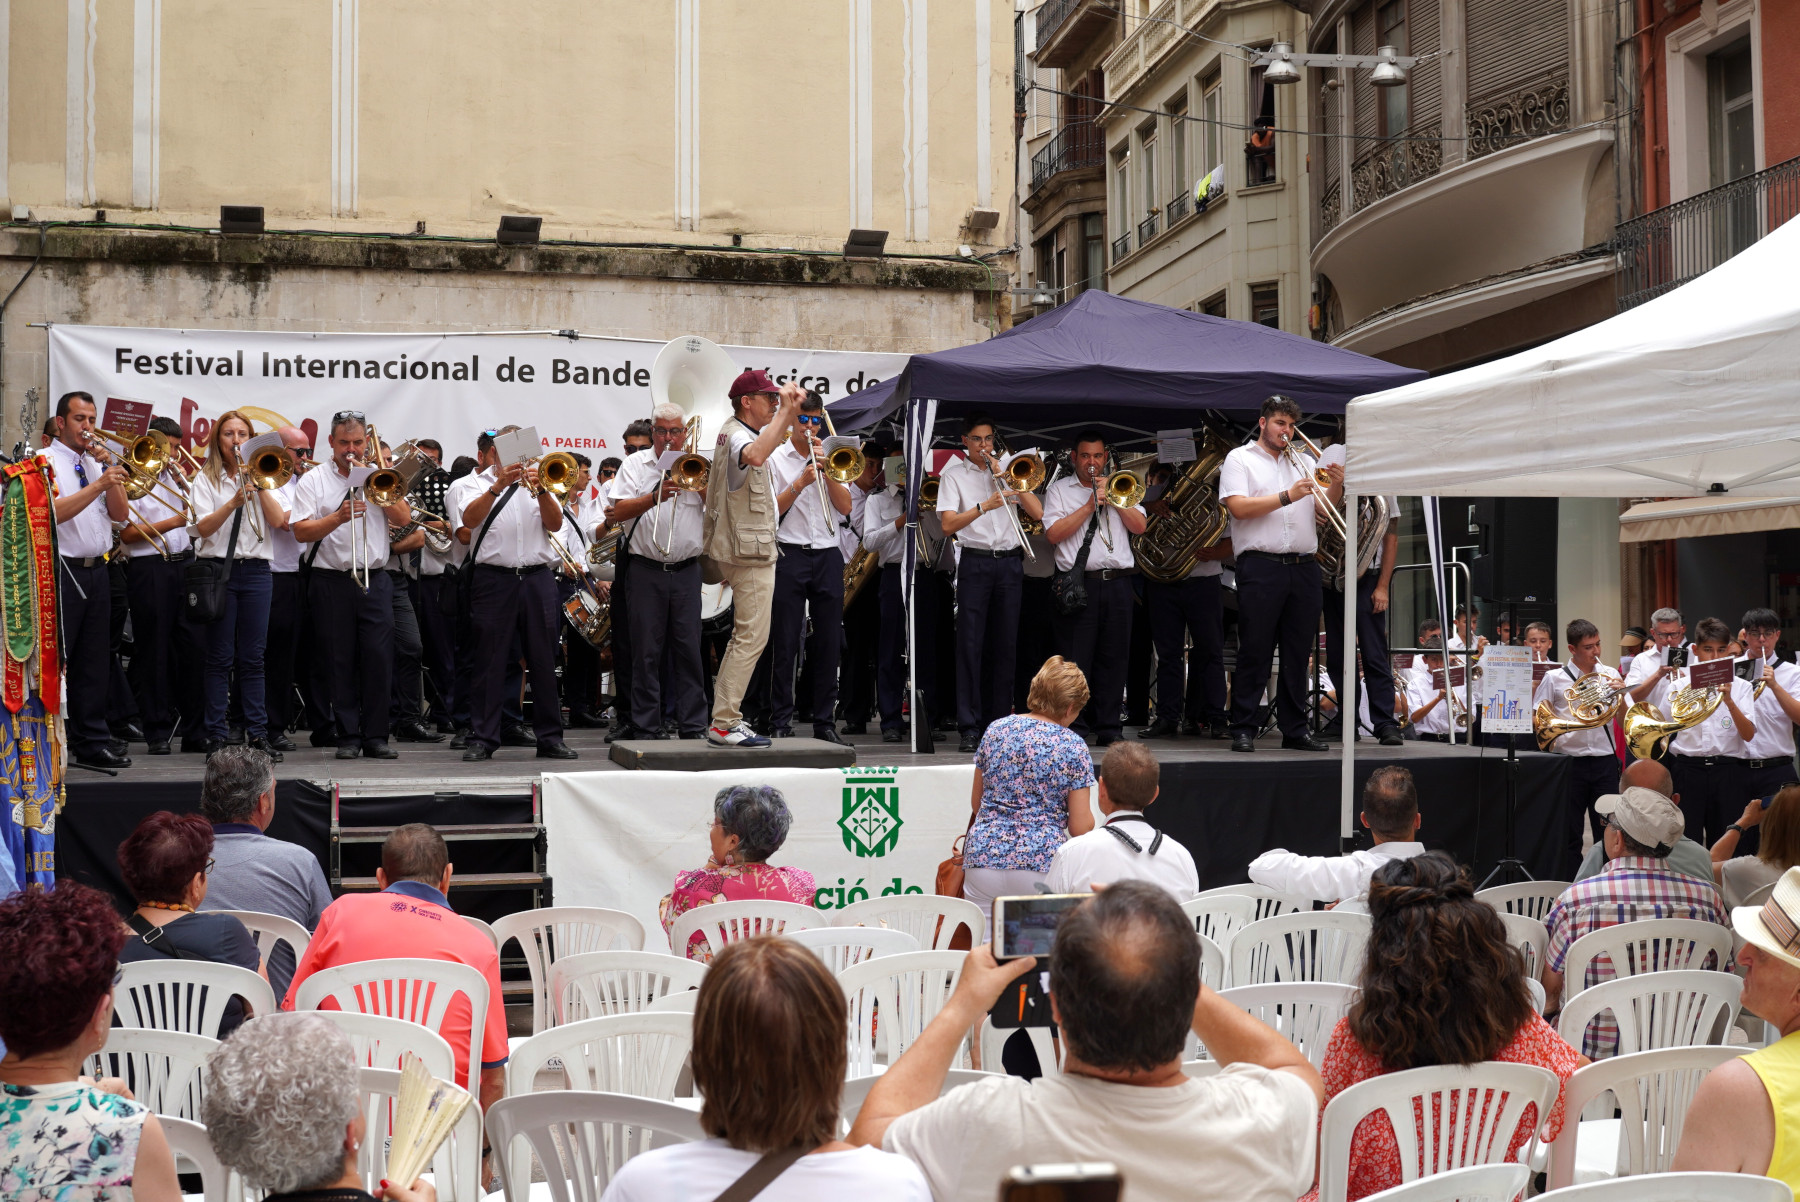 Totes les bandes han participat en la interpretació de la peça final del concert amb el director de la banda de Lleida, Amadeu Urrea, a la batuta